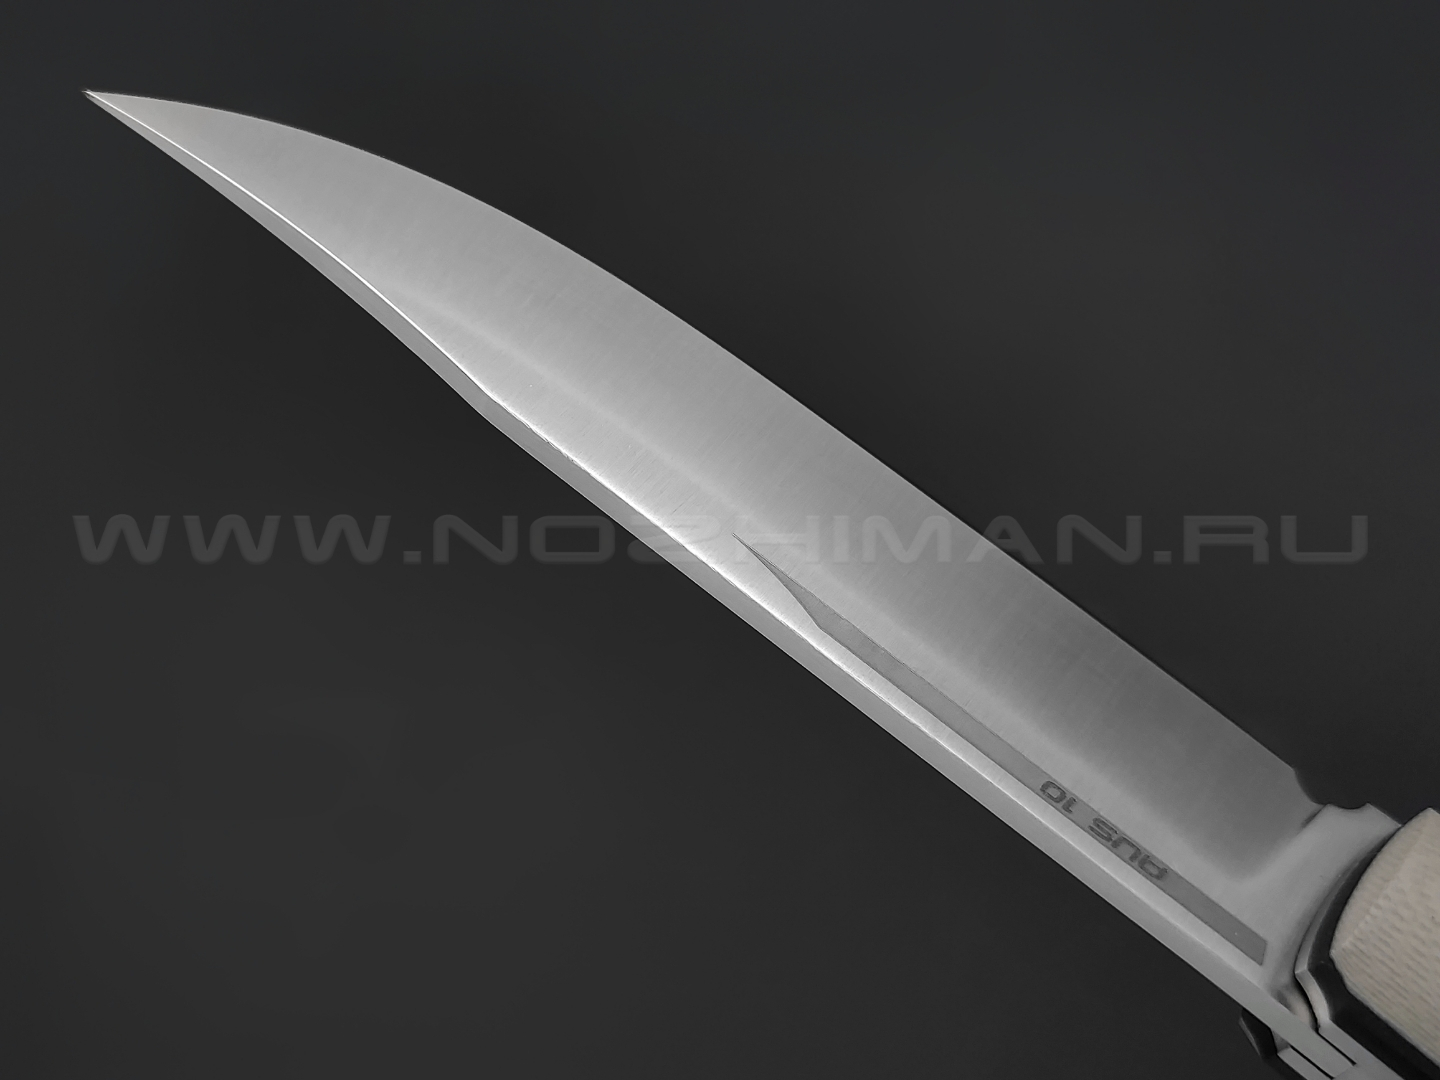 Северная корона складной нож Fin-track сталь Aus10 satin, рукоять G10 tan